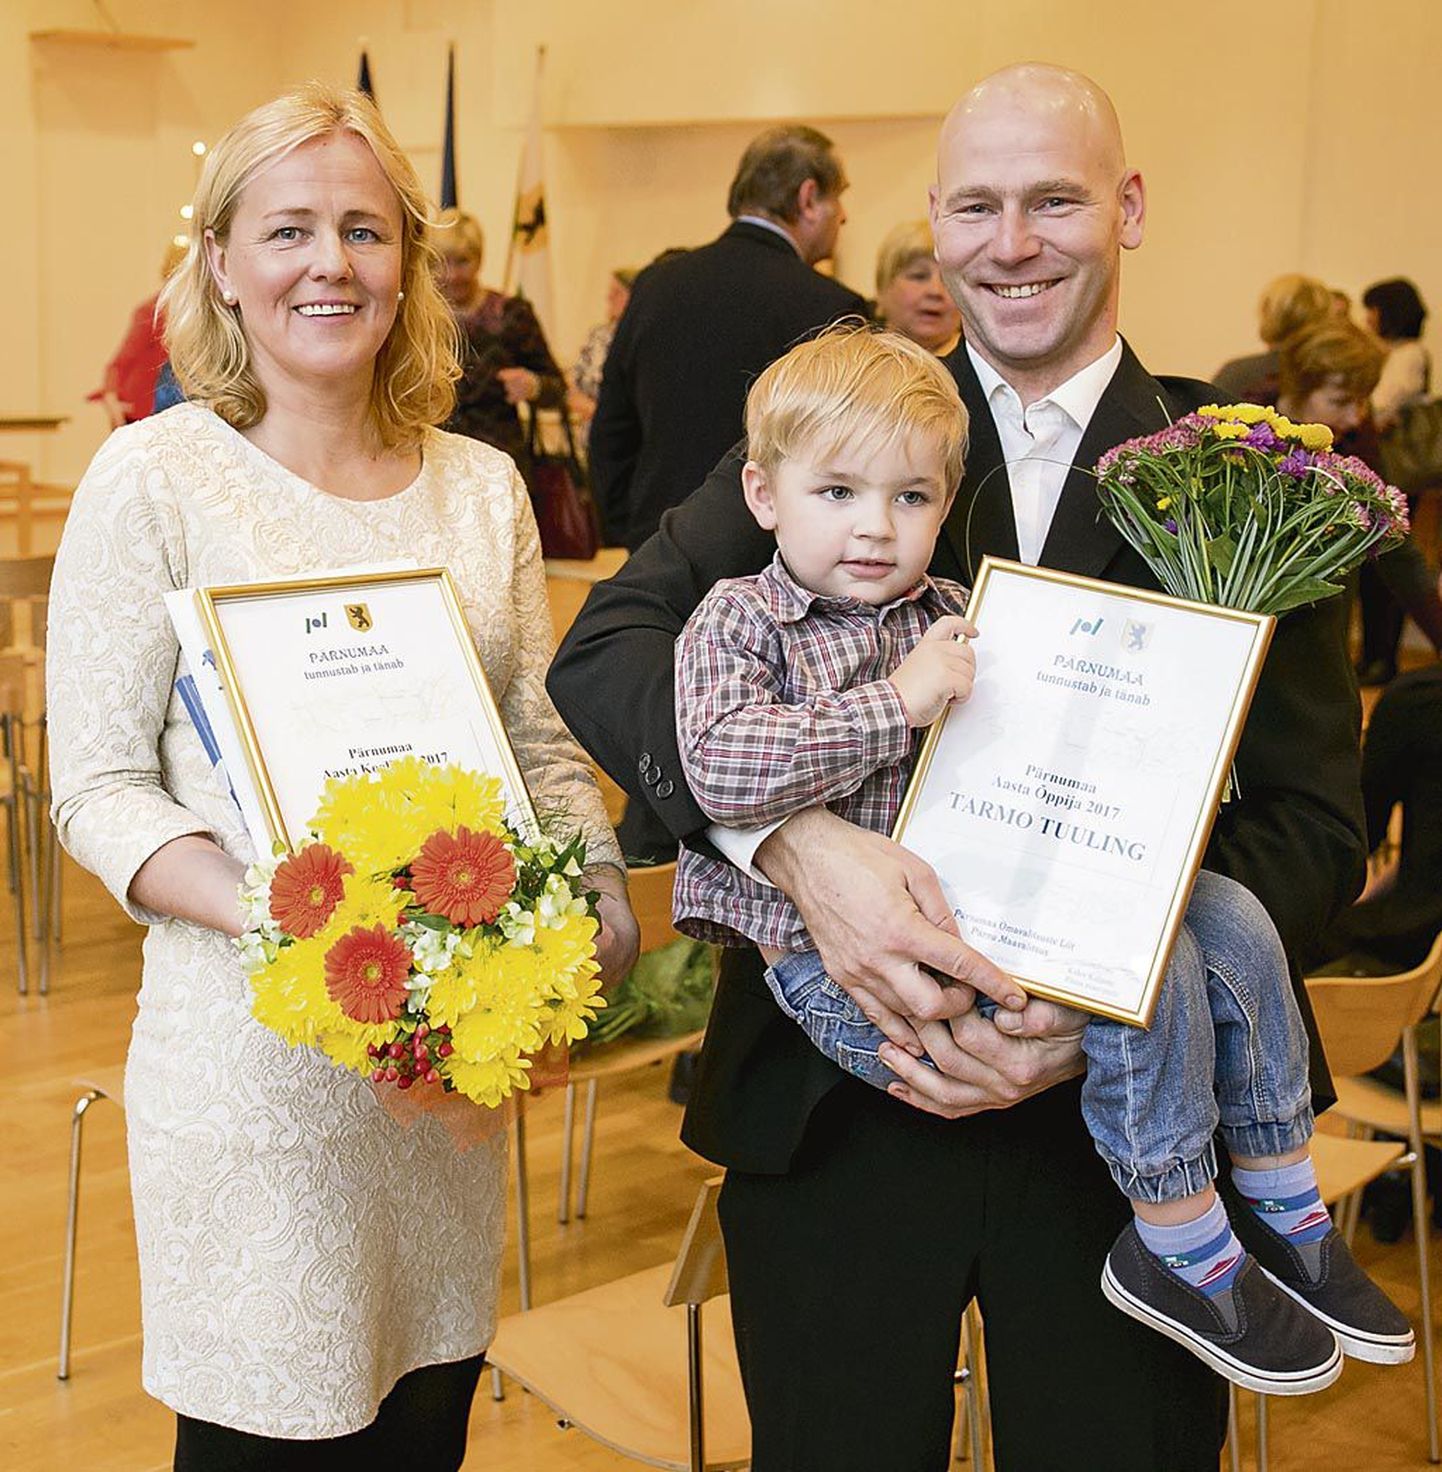 Tunnustusüritusel “Õppimine seob põlvkondi” pärjati Pärnumaa aasta koolitajaks Karin Luts ja aasta õppijaks Tarmo Tuuling, kes pildile jäi noorima pojaga.